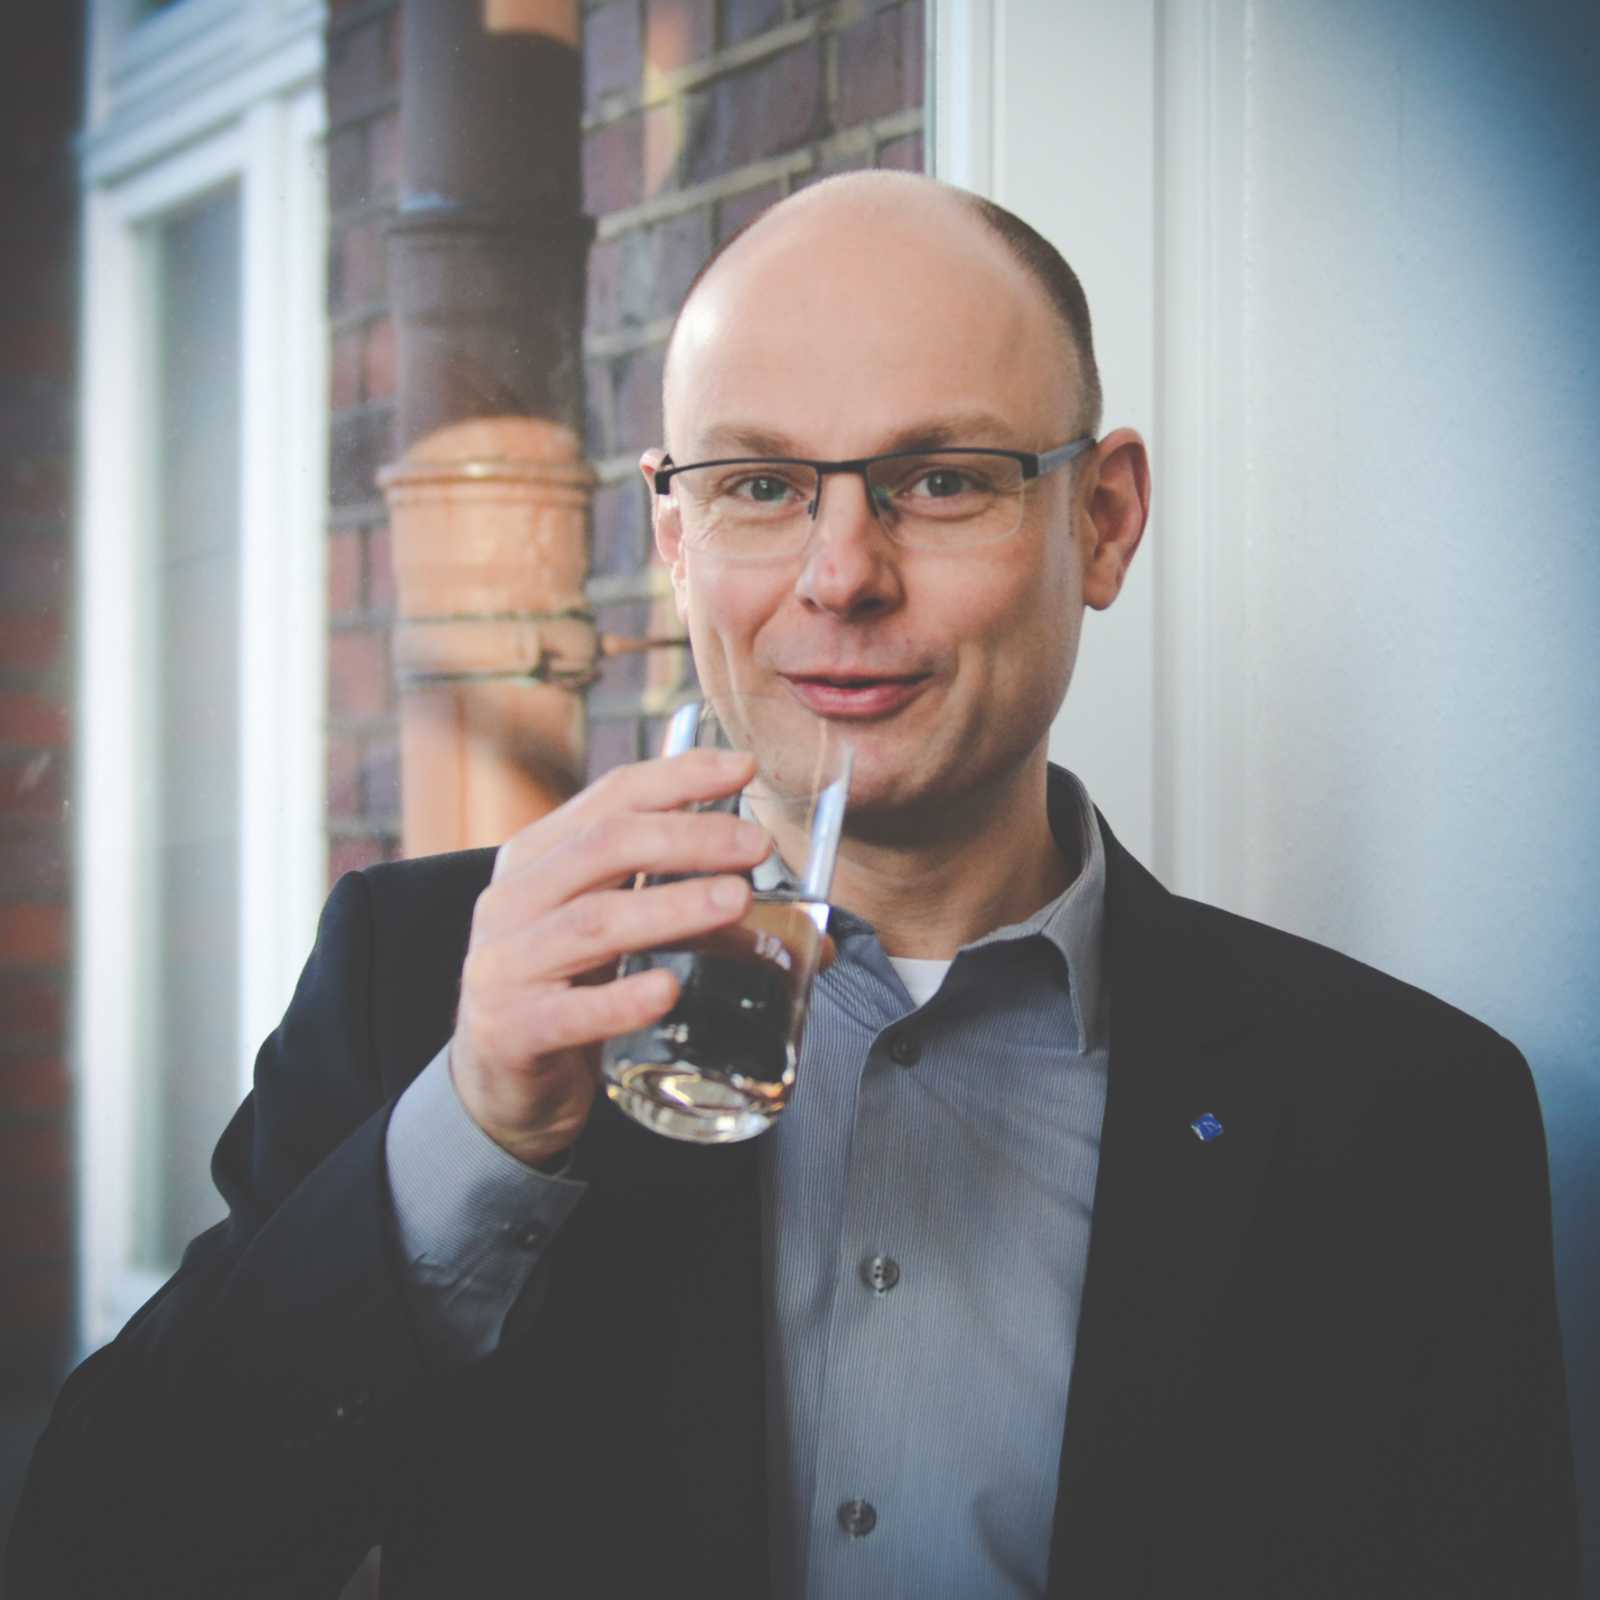 „Leitungswasser ist das Beste, was man trinken kann“, so die Überzeugung von Prof. Dr. Jens Haberkamp vom Institut für Wasser - Ressourcen - Umwelt (IWARU) der FH Münster. (Foto: FH Münster/Pressestelle)